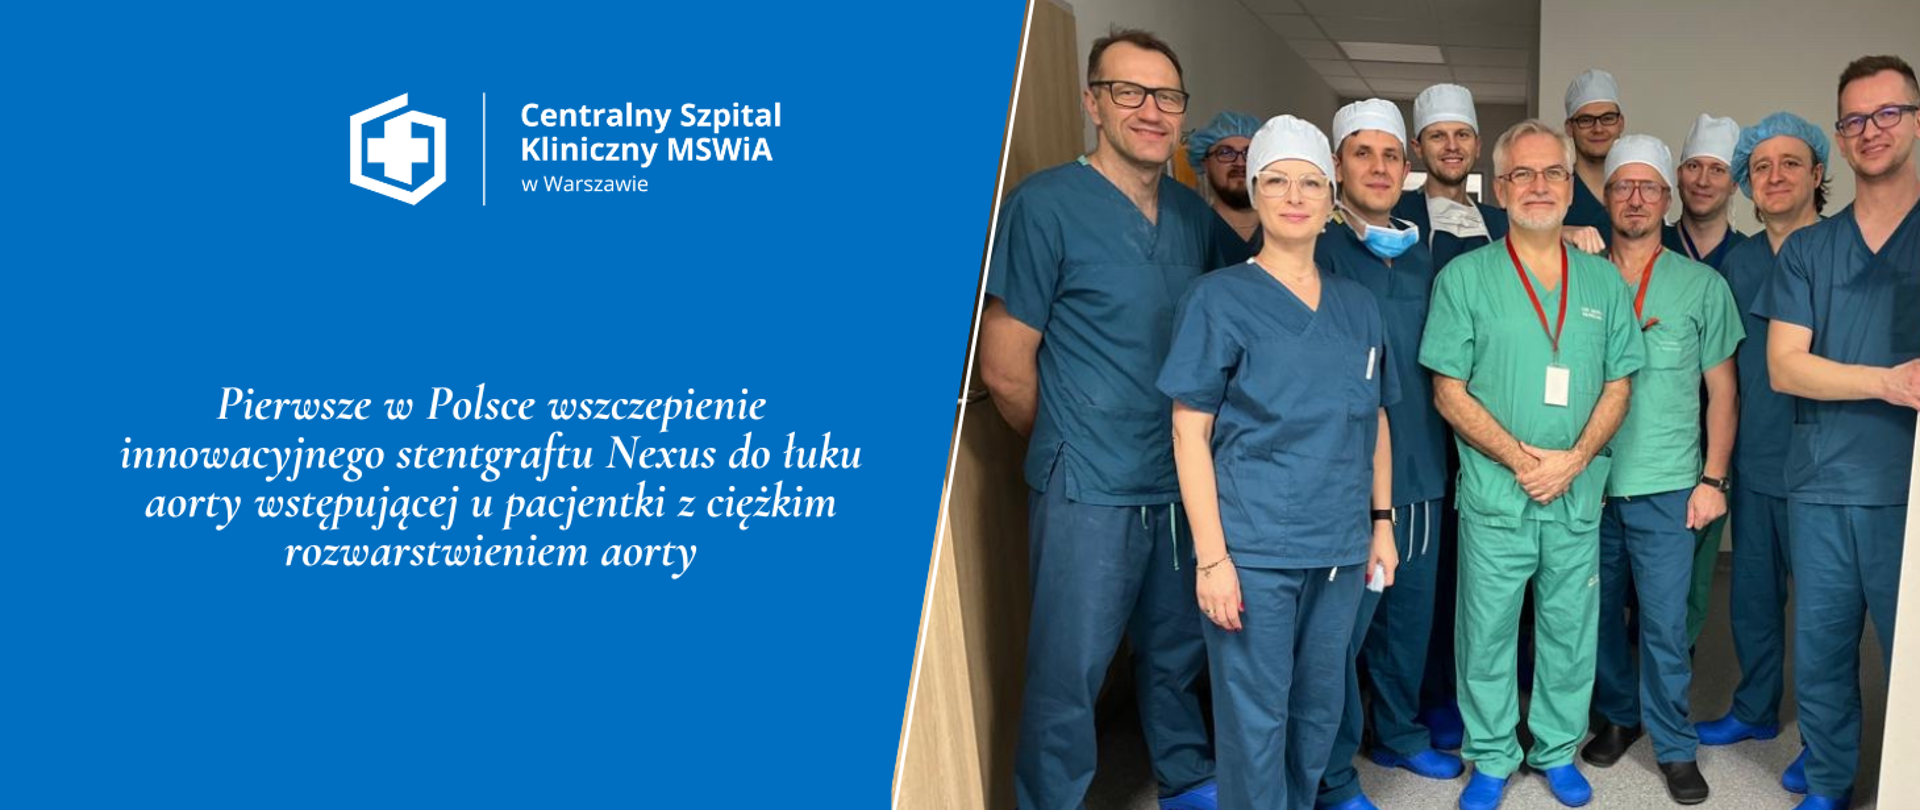 Pierwsze w Polsce wszczepienie innowacyjnego stentgraftu Nexus do łuku aorty wstępującej u pacjentki z ciężkim rozwarstwieniem aorty